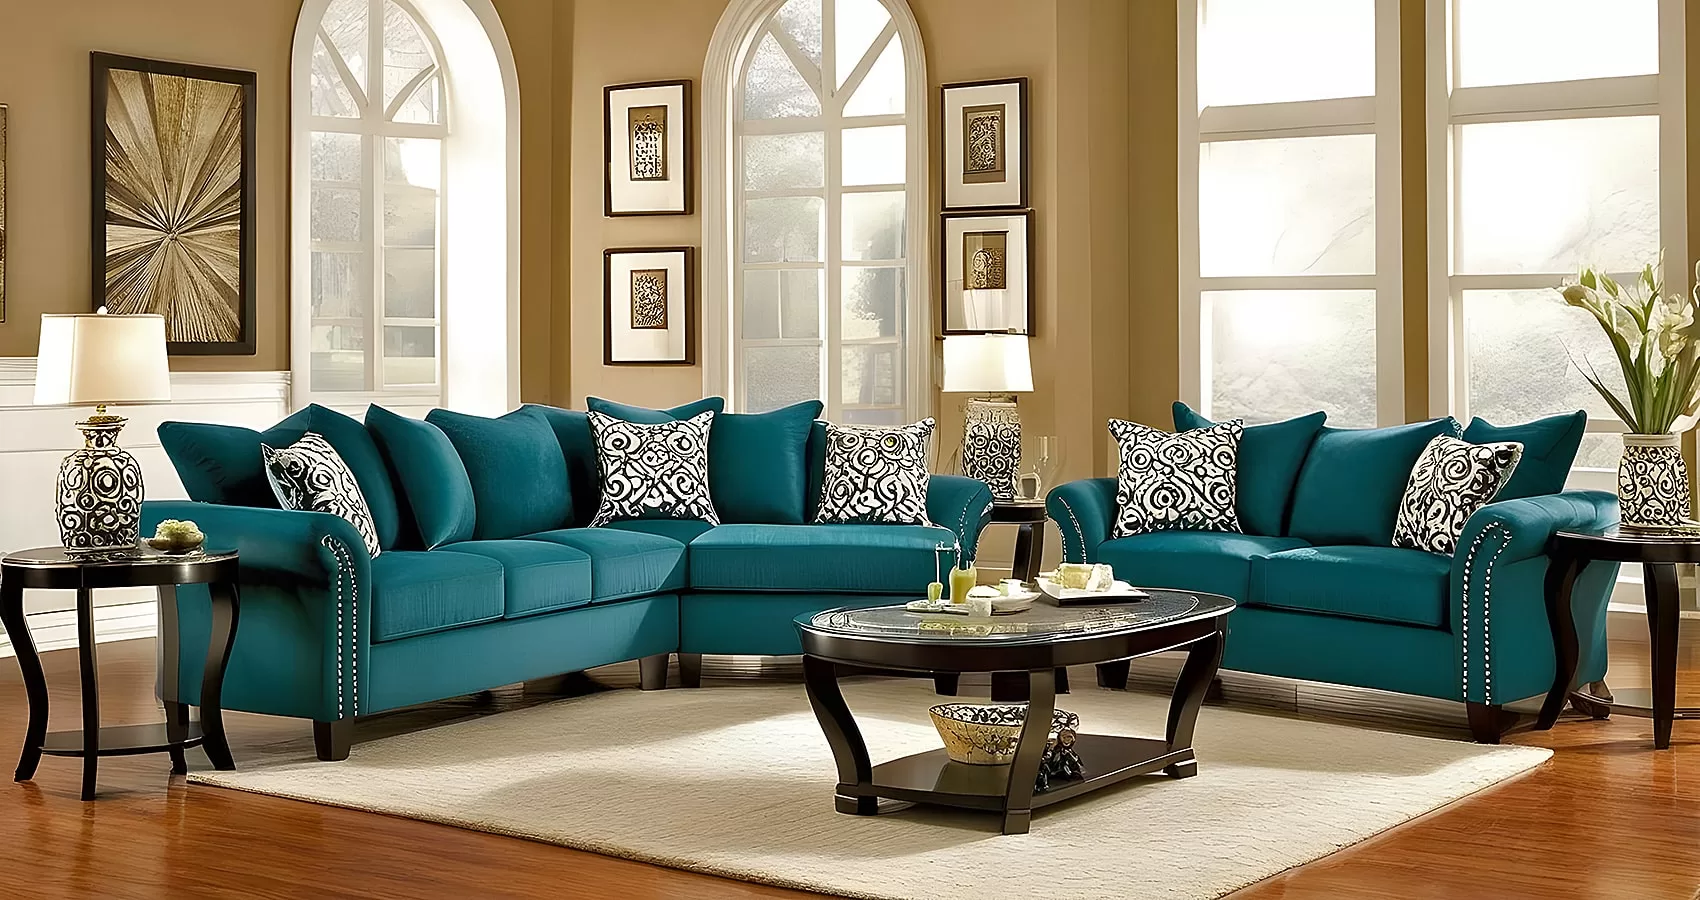 Sofa Living Room | Living Room Ideas Blue Sofa | Blue Couch in Living Room | Blue Couch Decor Ideas | Blue Couch for Living Room